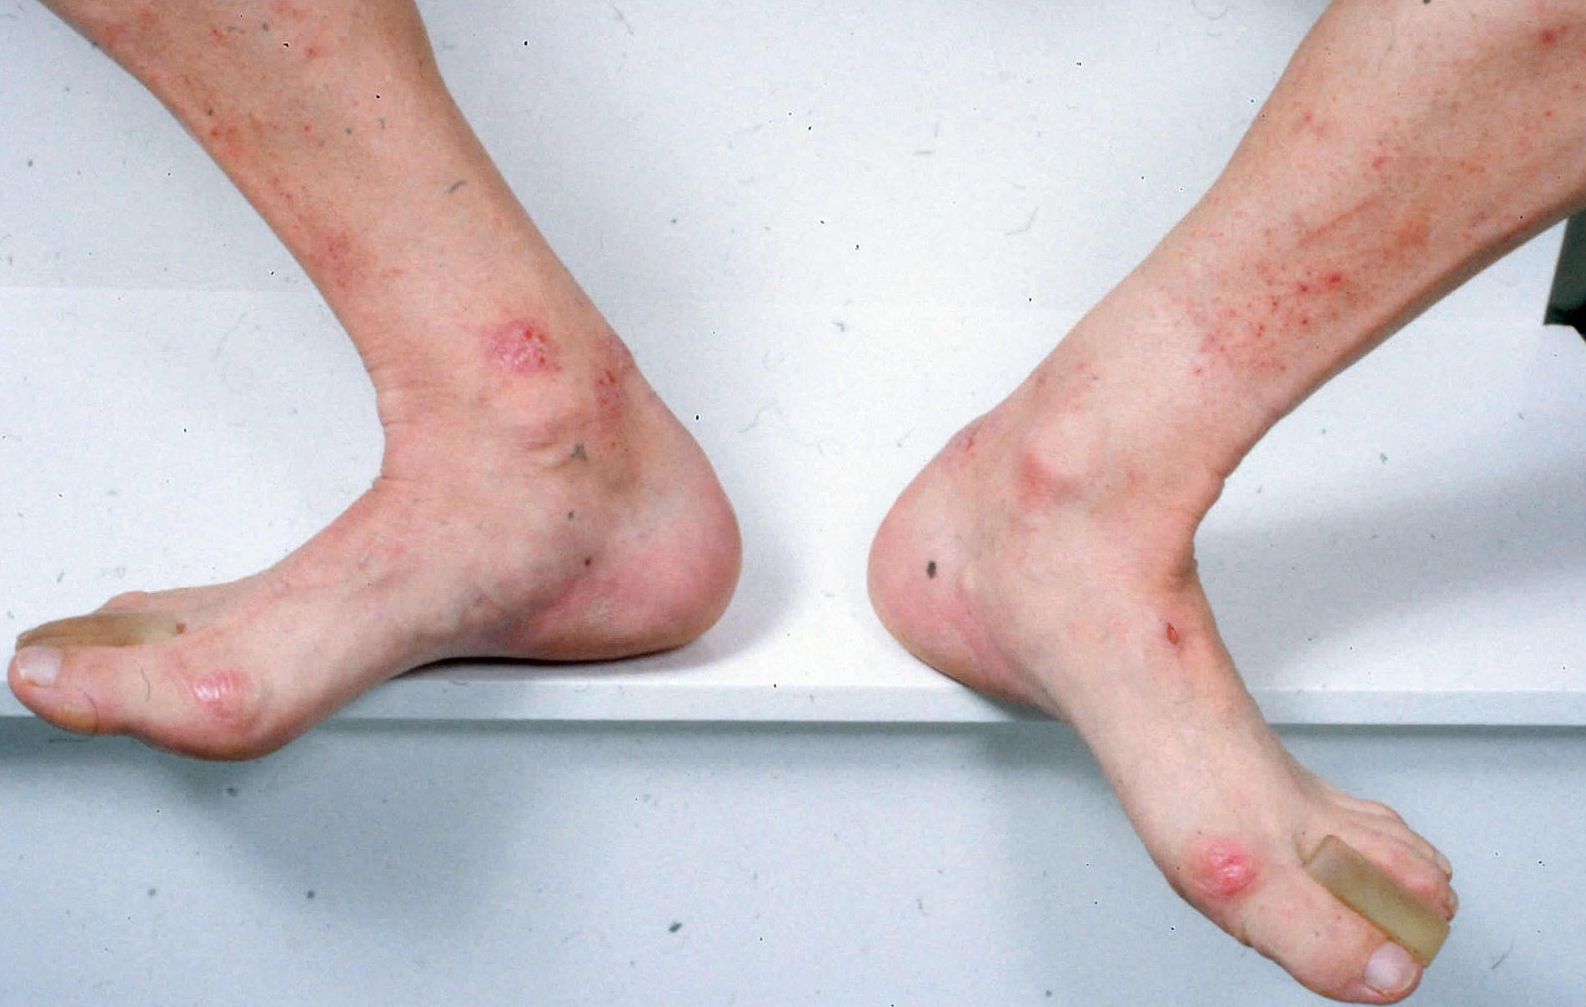 Dermatitis Herpetiformis (Celiac Disease Rash) Photos